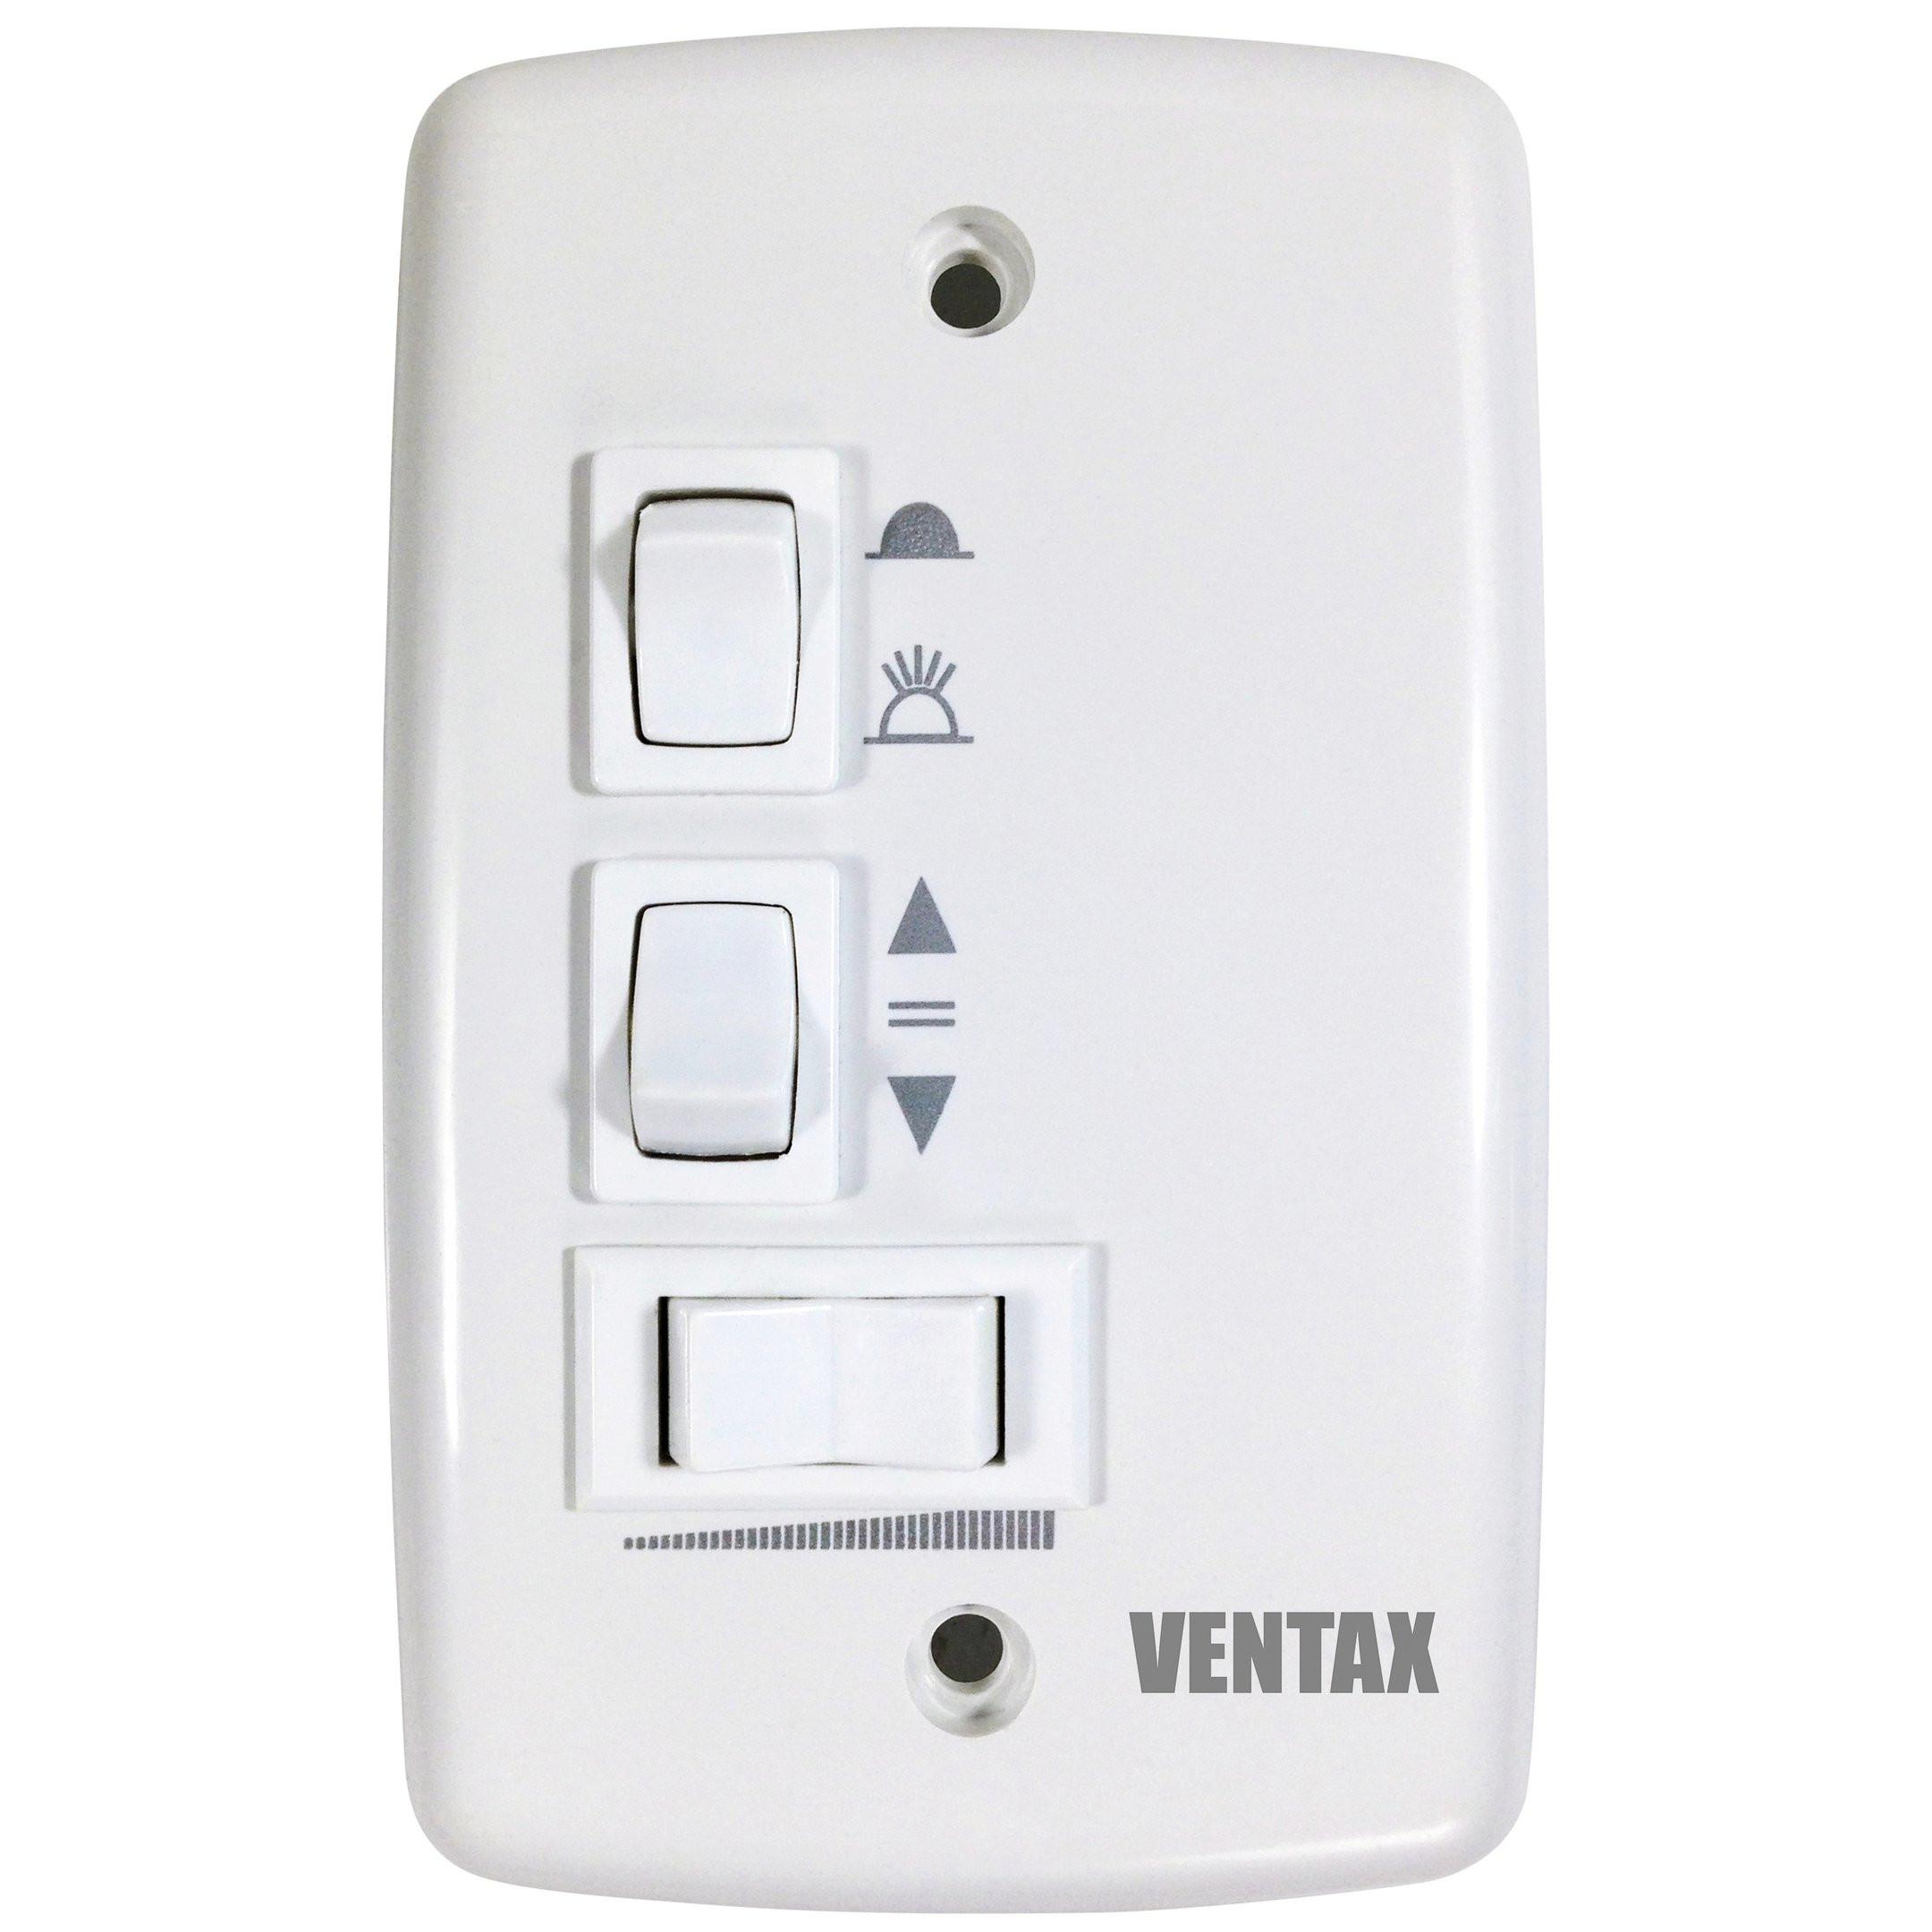 Ventilador de Teto Ventax Uno 4 Pás Branco Luxo Moderno 110v - 3